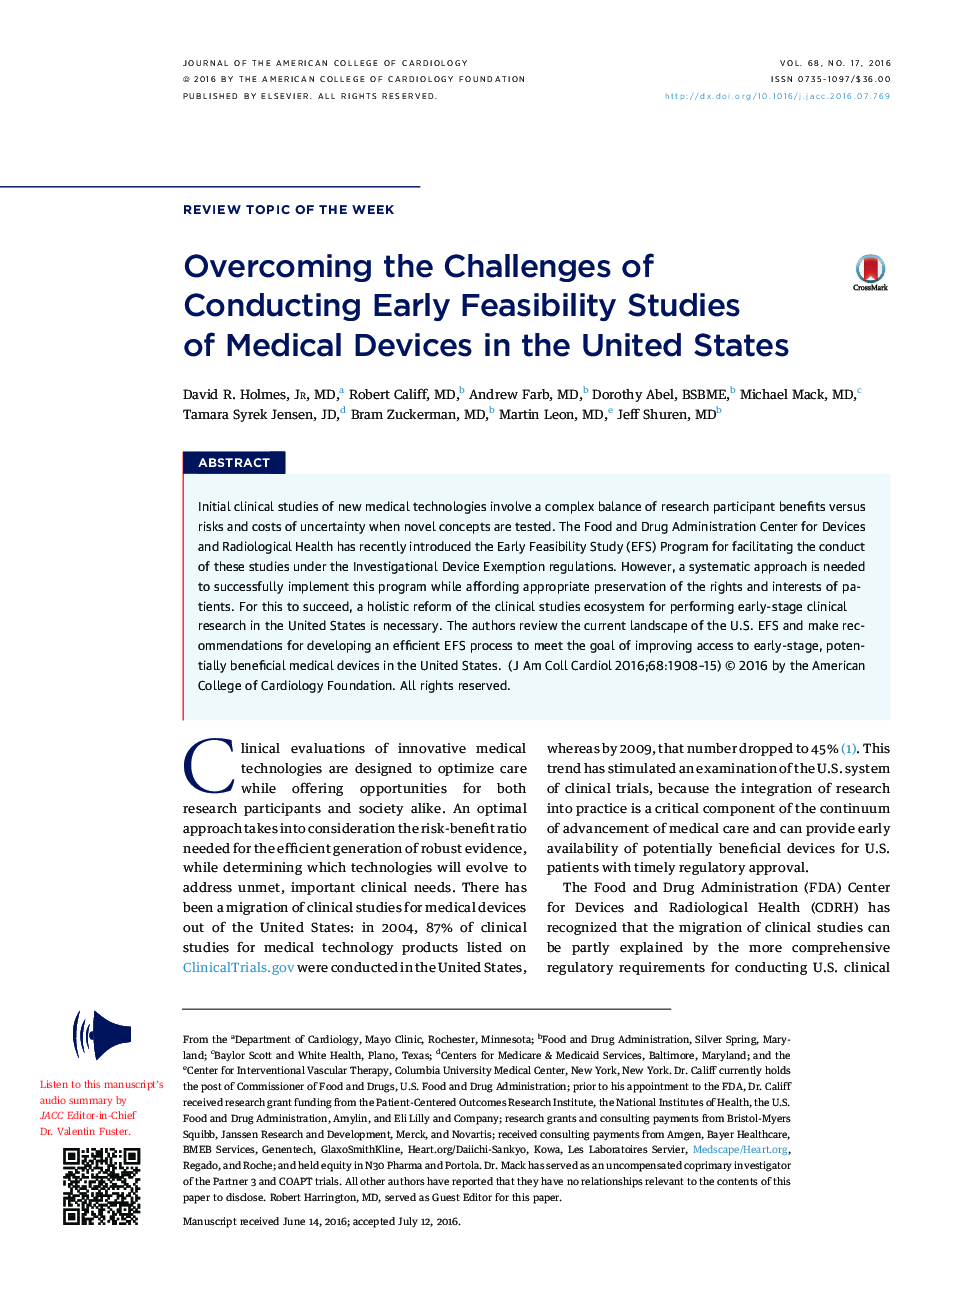 غلبه بر چالش های انجام شده در یک مطالعه پیشین امکان سنجی از دستگاه های پزشکی در ایالات متحده 